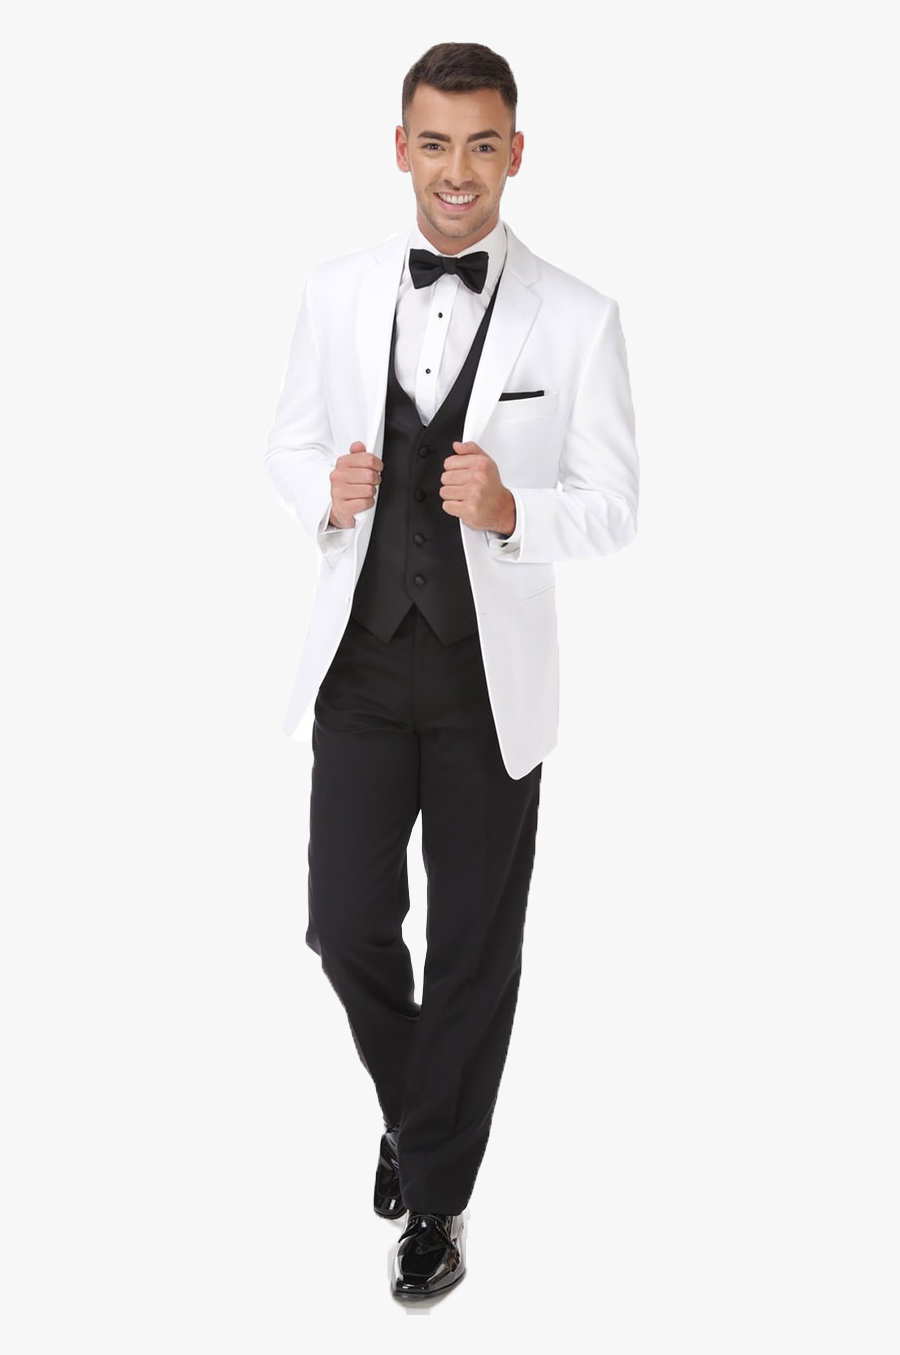 White Tuxedo Suit Png Clipart - Tuxedo , Free Transparent Clipart ...